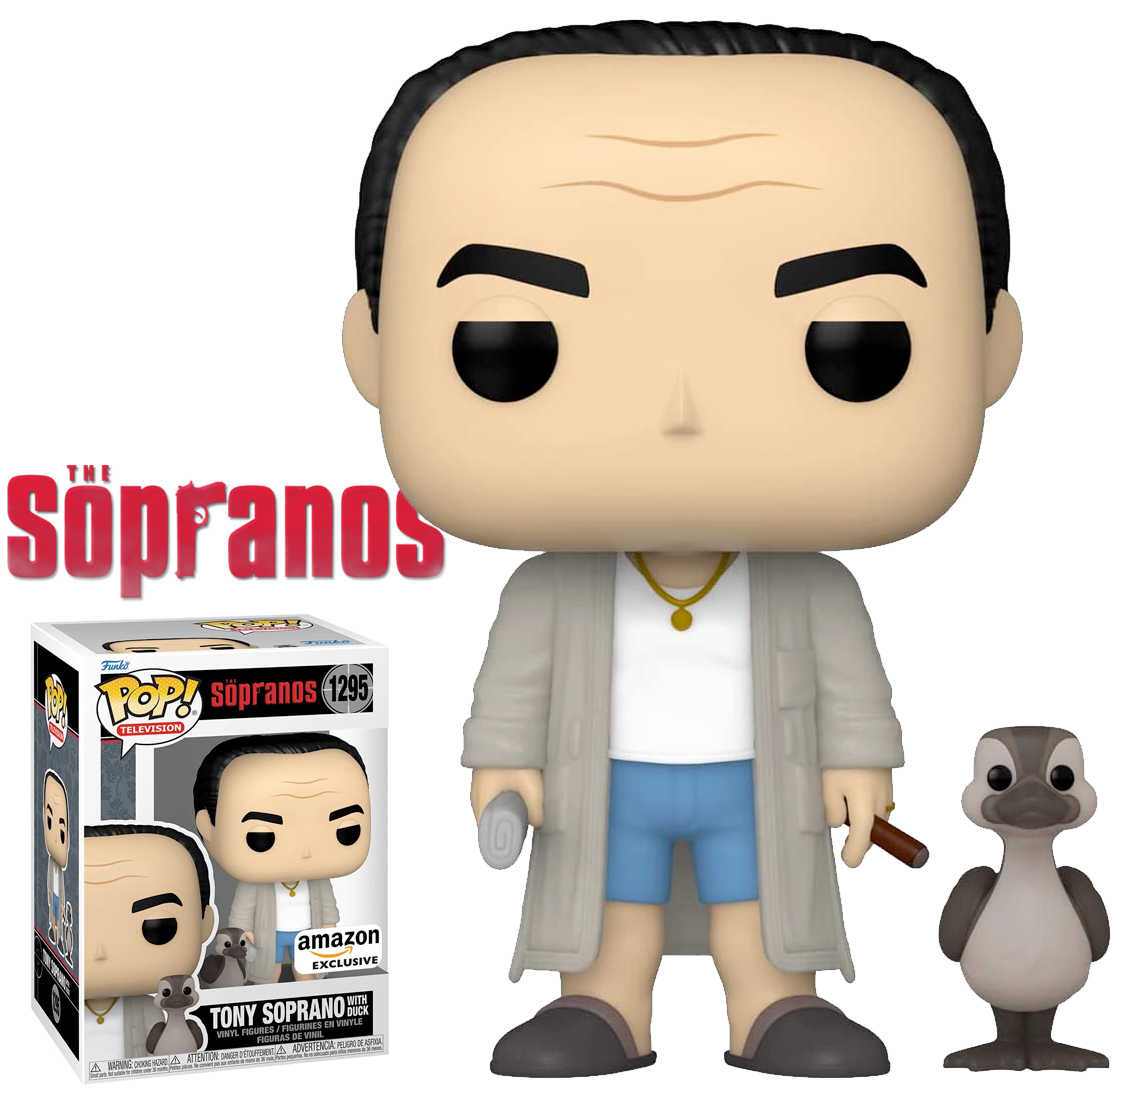 Bonecos Pop! Tony Soprano e Pato Amigo da Série Os Sopranos